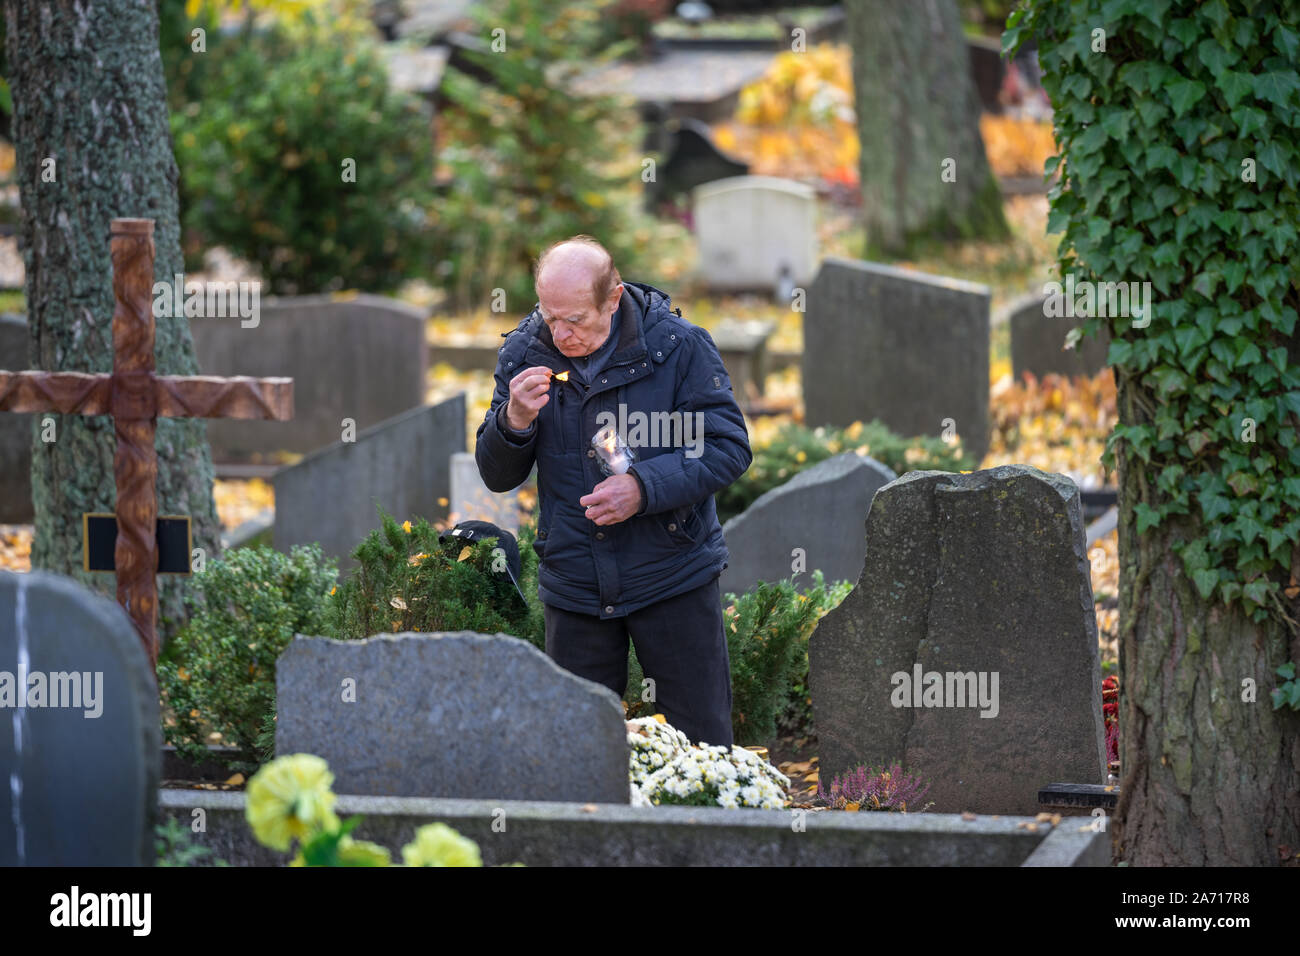 L'homme rend visite aux tombes des parents et allume une bougie à Vilnius, Lituanie de cimetière. Les tombes sont décorées de fleurs et de bougies Banque D'Images